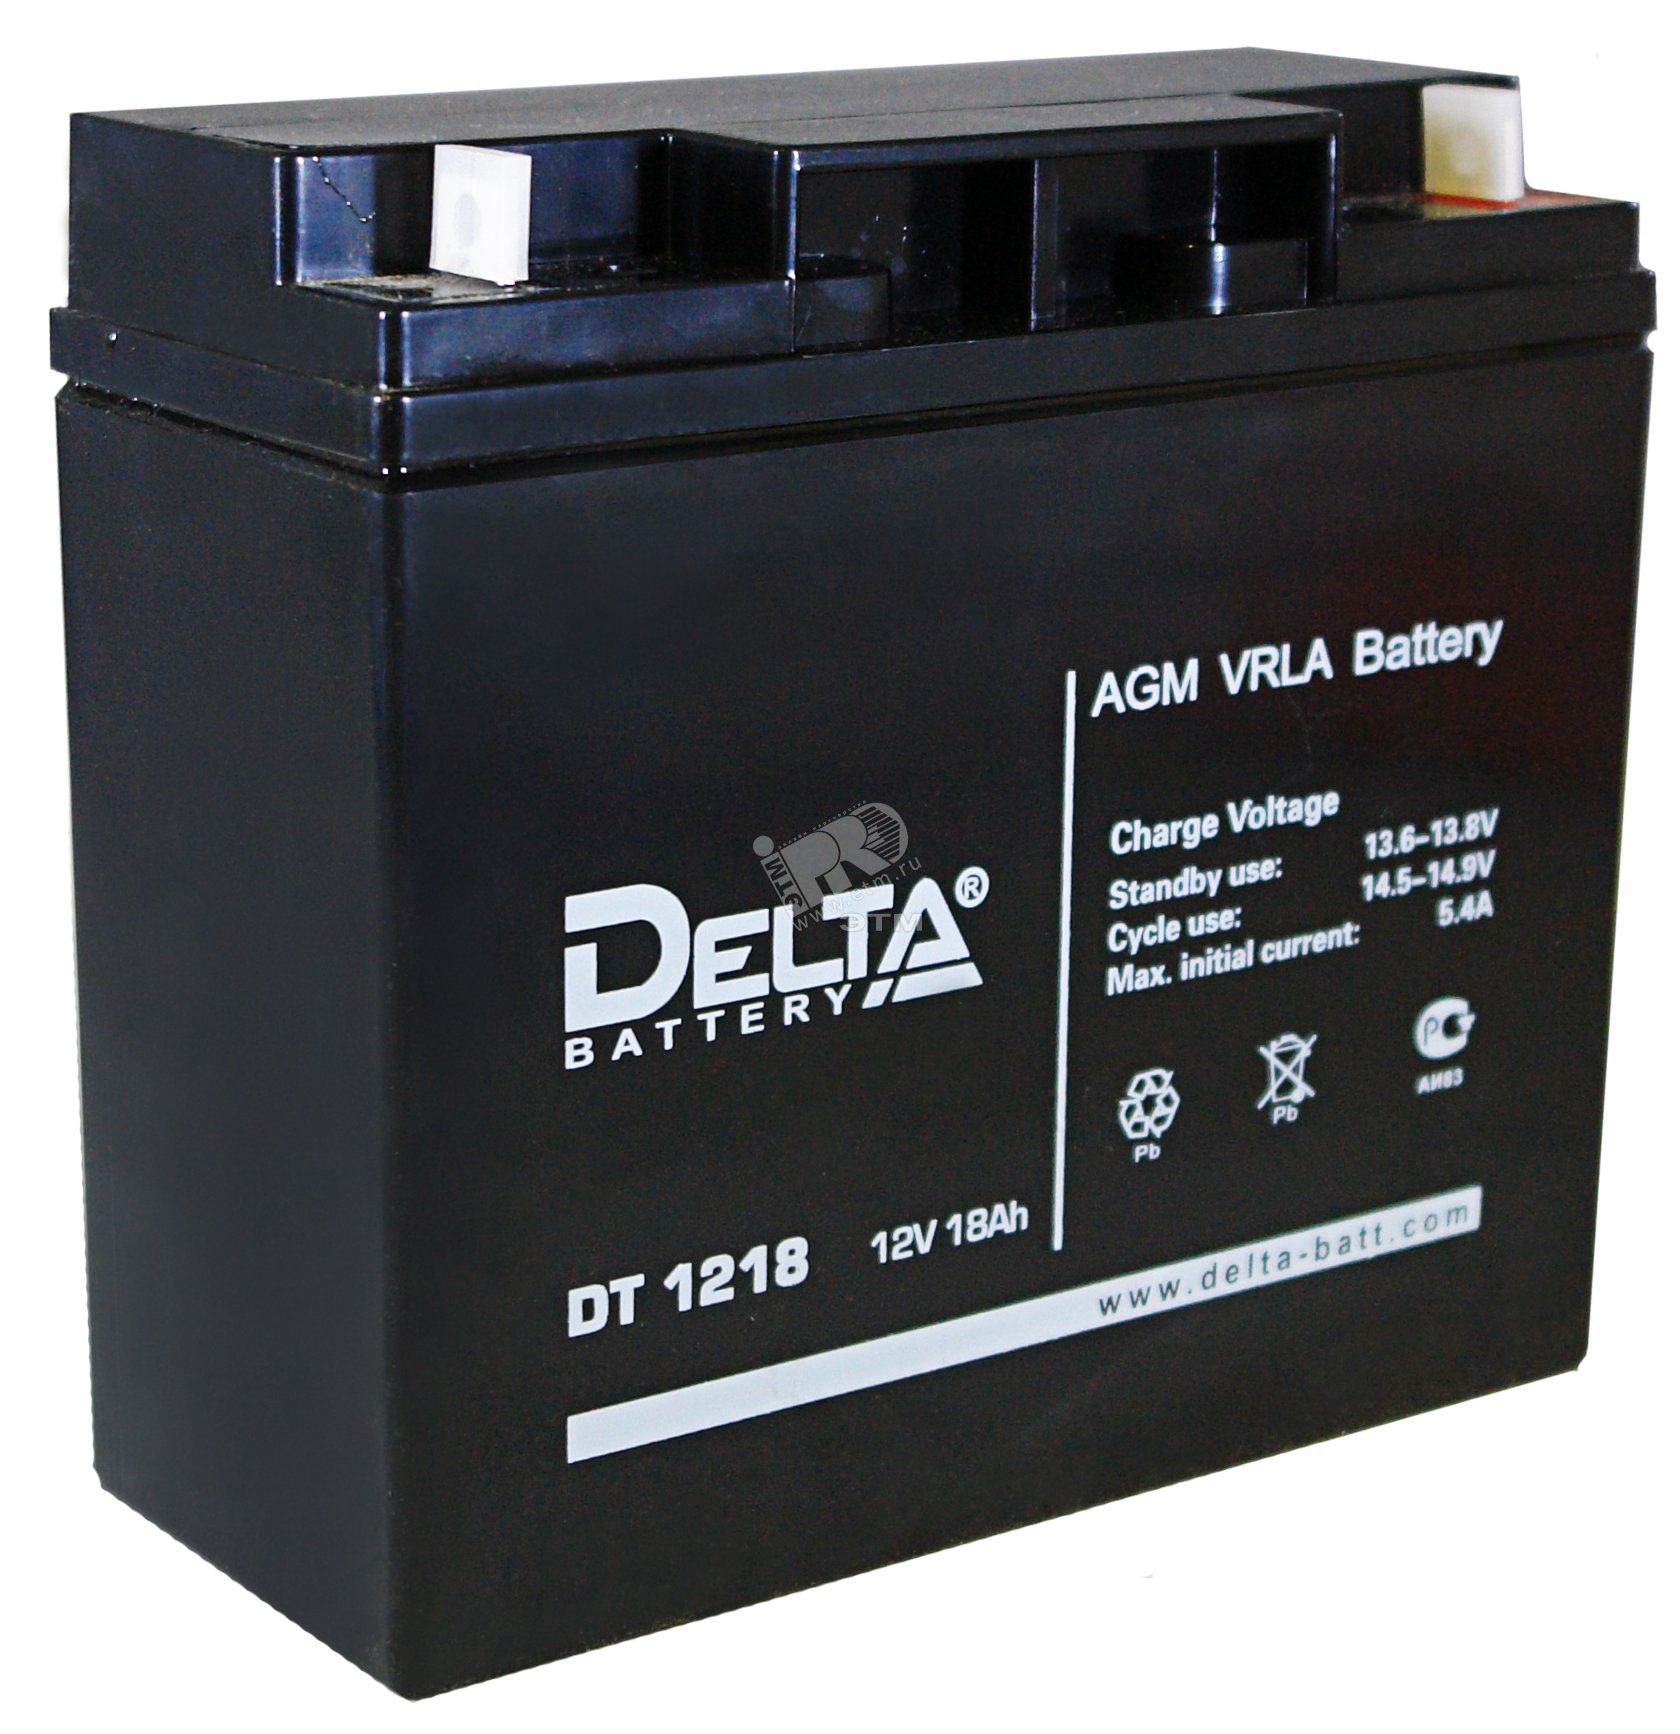 Battery 18. Аккумуляторная батарея Delta DT 1218. АКБ Delta DT 1218. Аккумулятор Delta DT 1218 12v 18ah. Security Force SF 1217 12в 17 а·ч.